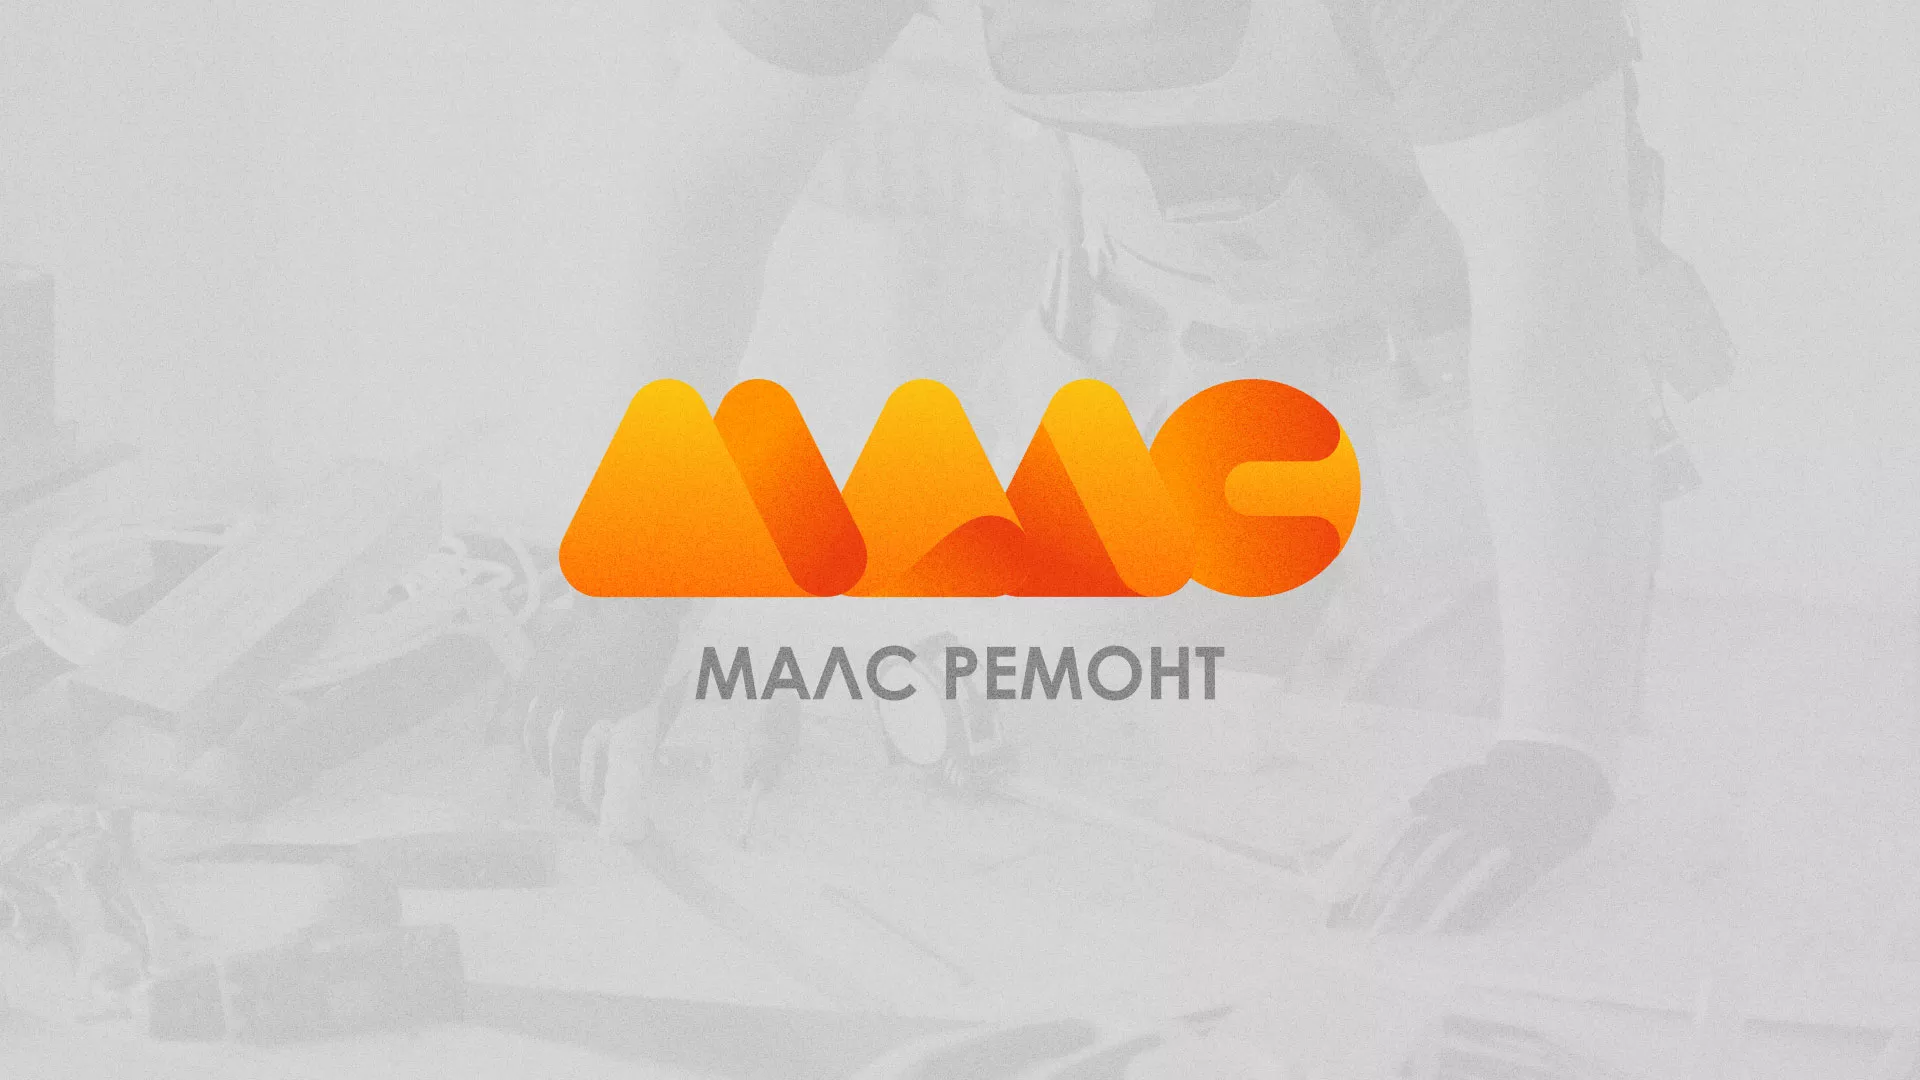 Создание логотипа для компании «МАЛС РЕМОНТ» в Майском